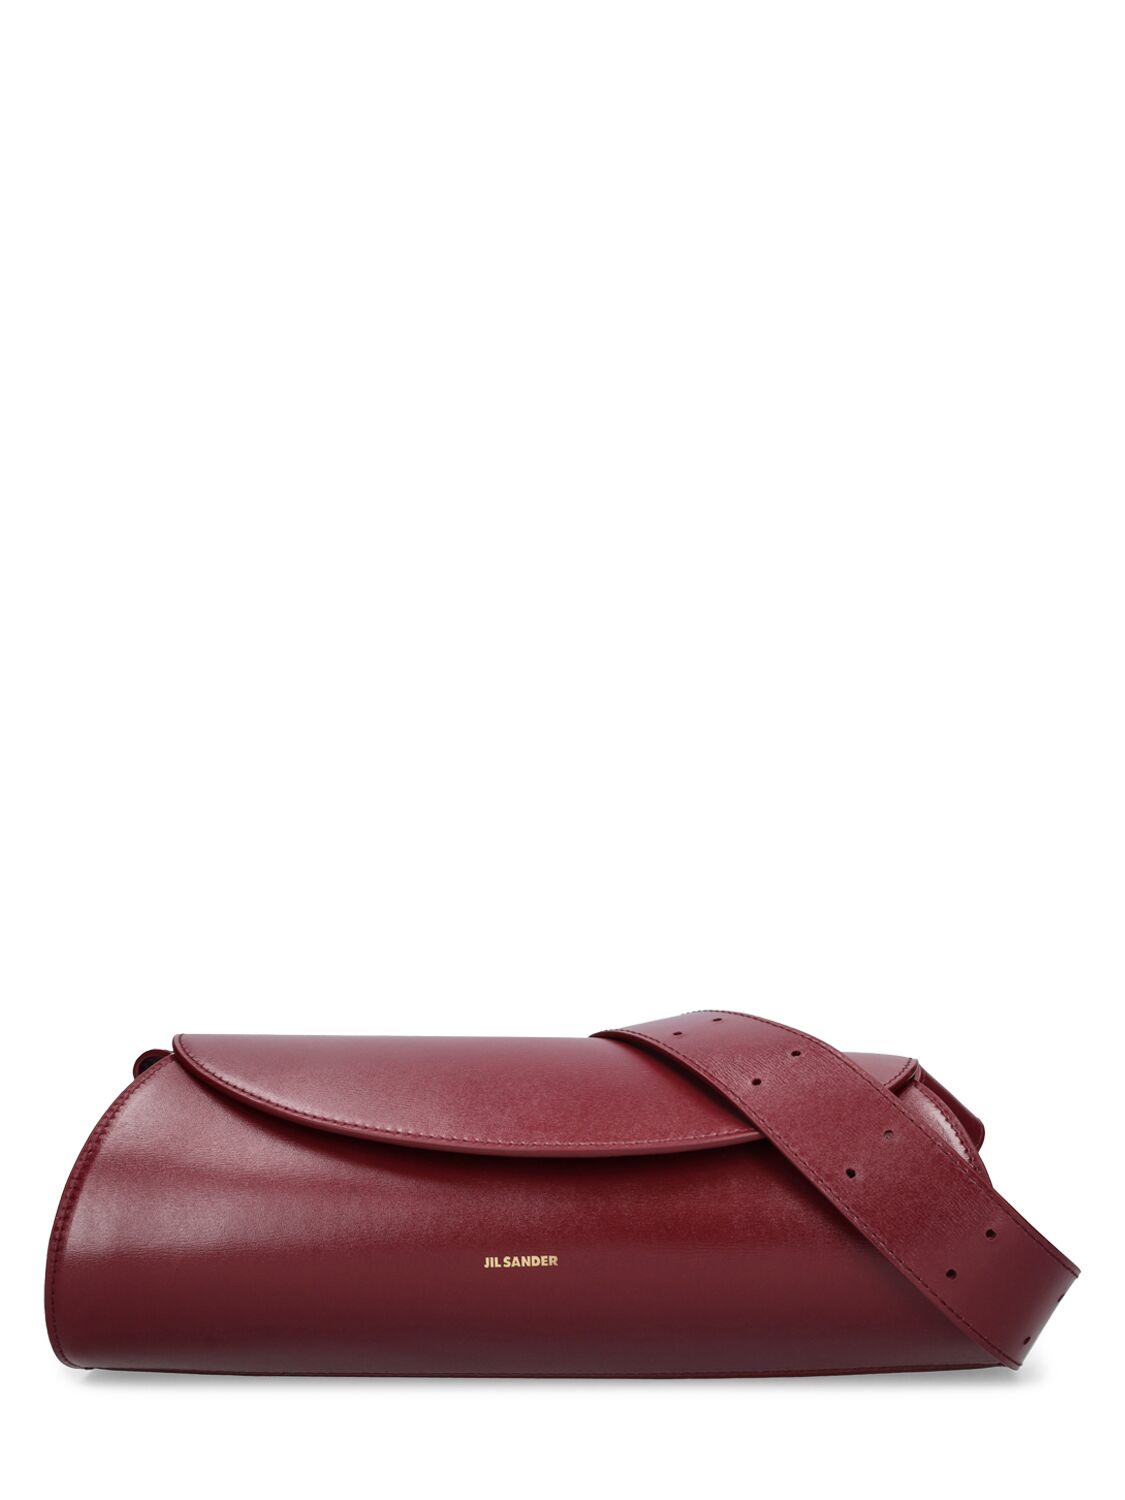 Shop Jil Sander Small Cannolo Leather Shoulder Bag In Garnet Red